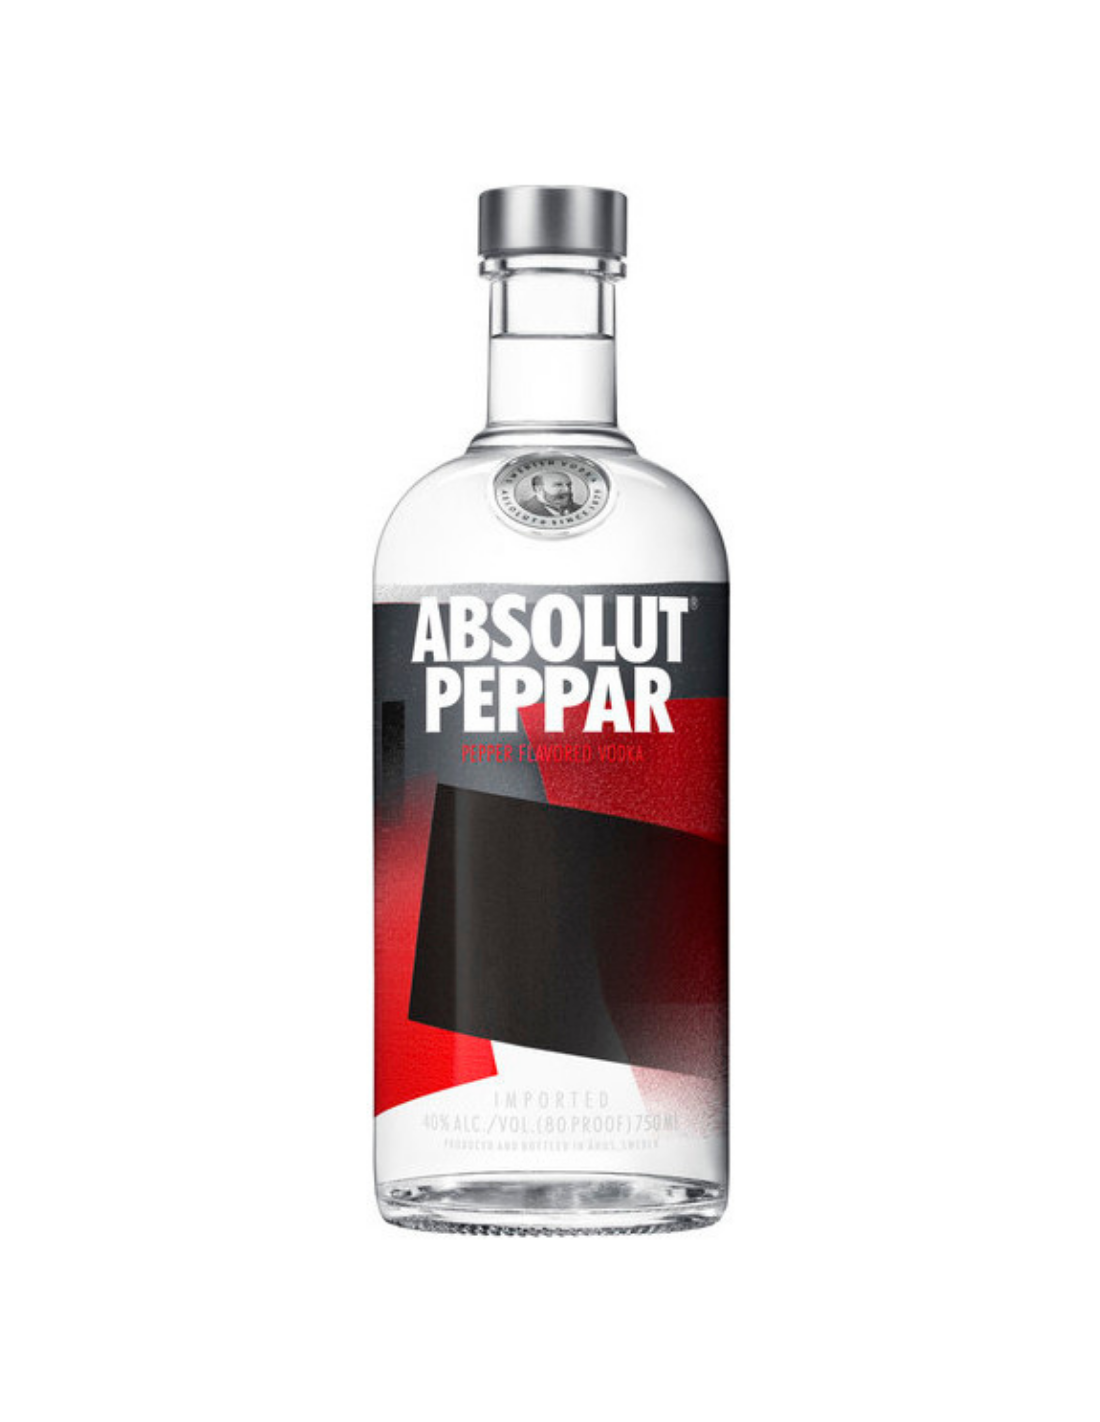 Vodca Absolut Peppar Flavored, 0.5L, 40% alc., Suedia alcooldiscount.ro